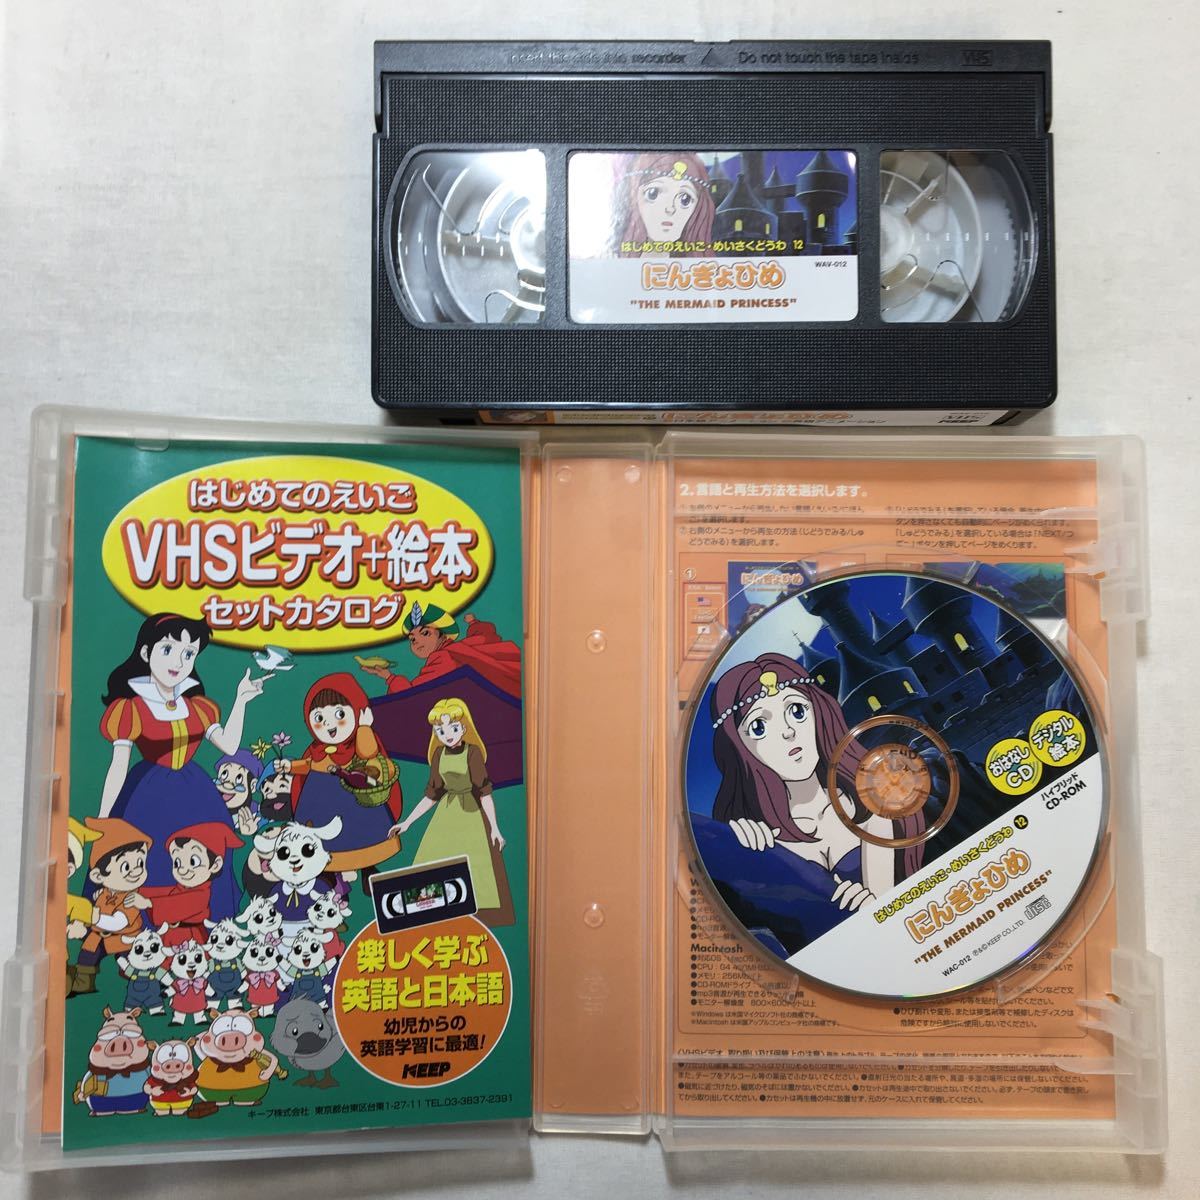 zaa-zvd13♪アニメビデオ～にんぎょひめ [VHS]ビデオ＋おはなしCD付 (はじめてのえいご・めいさくどうわ12) 辻伸一 (著) 1996年